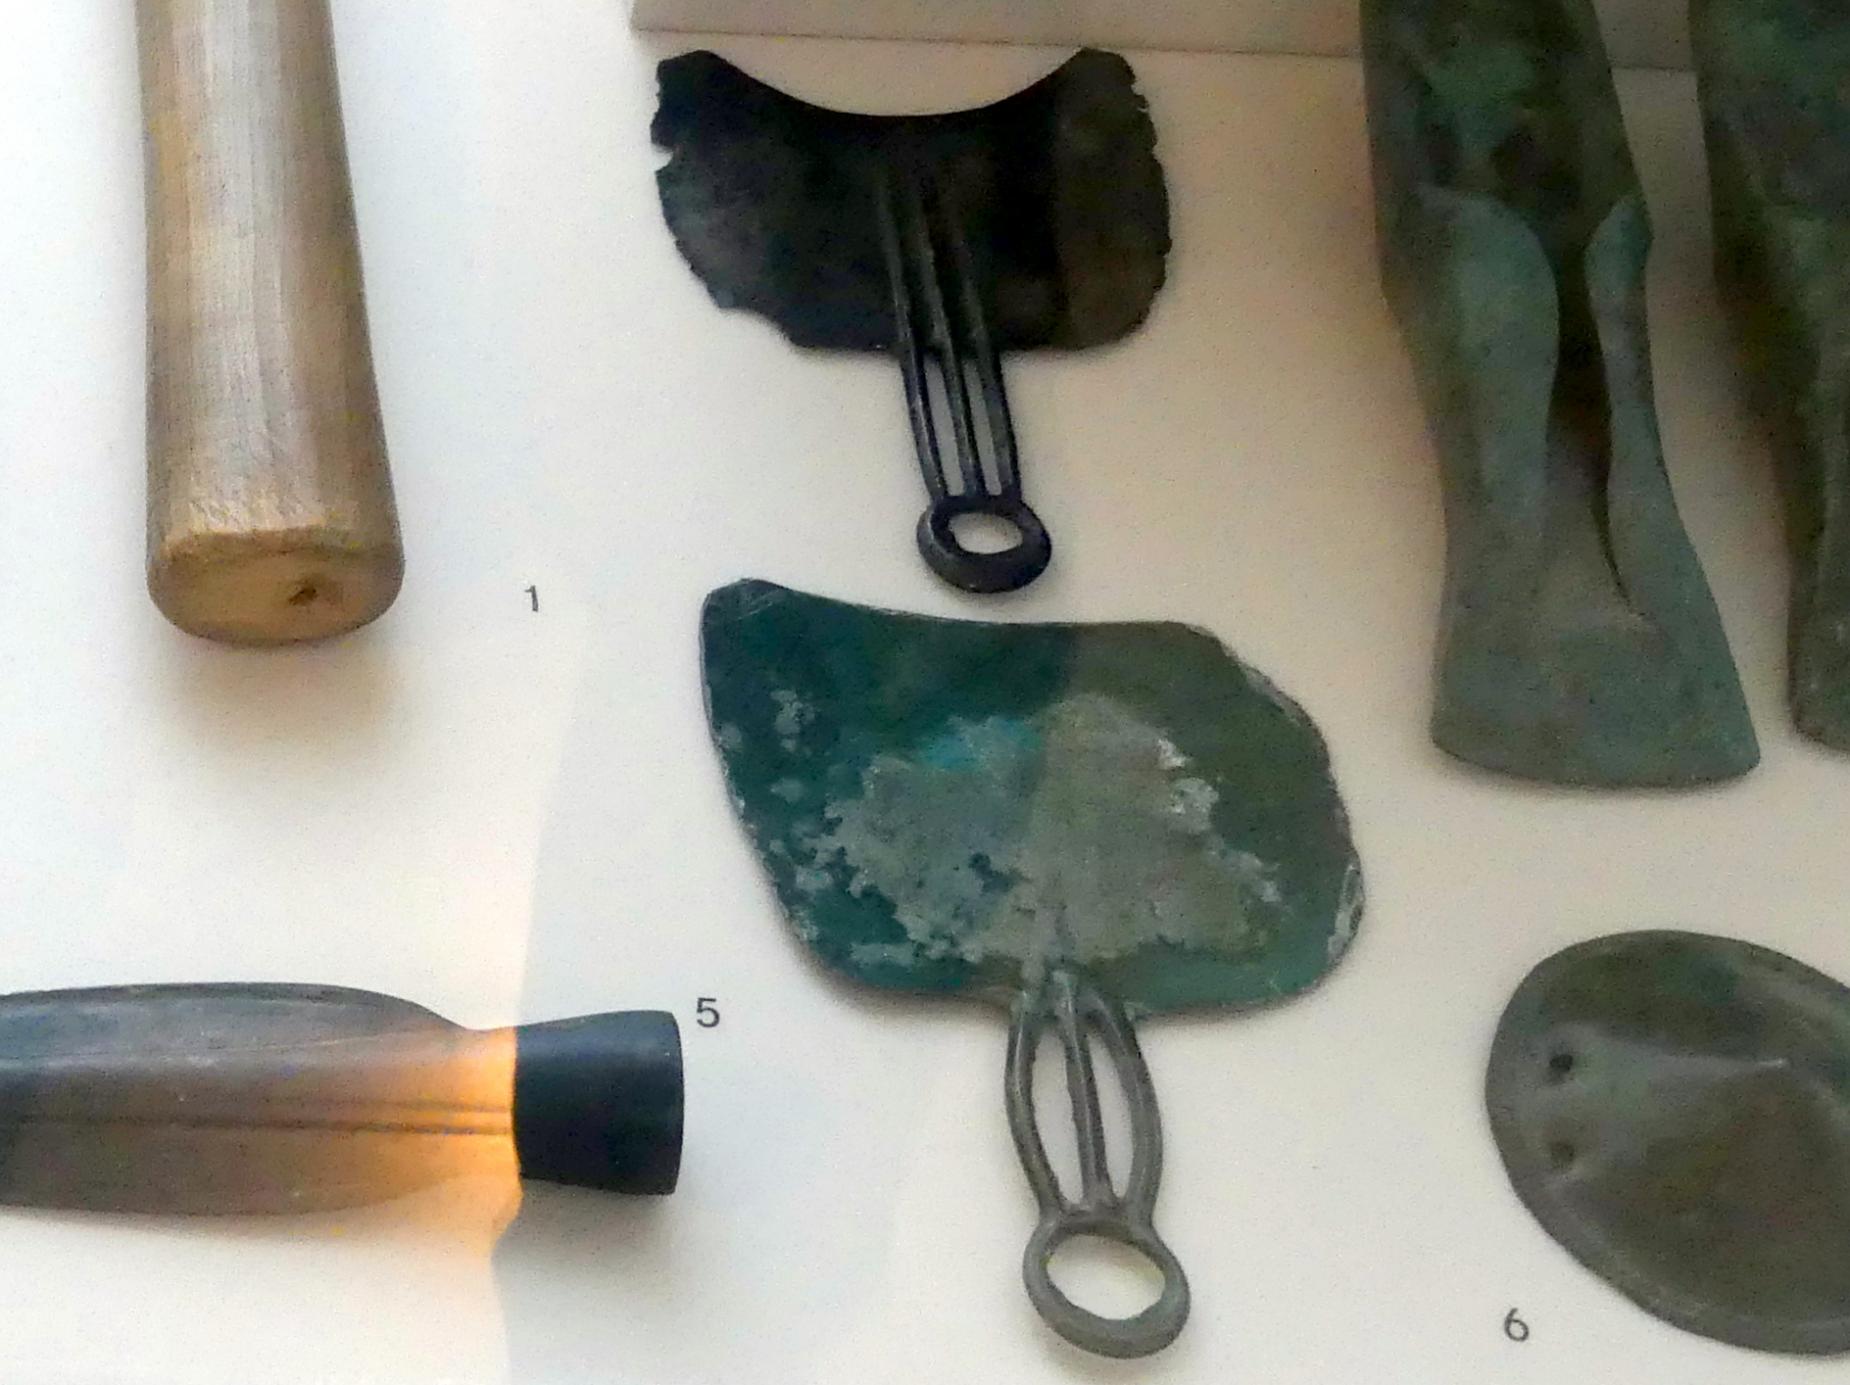 Rasiermesser, Urnenfelderzeit, 1400 - 700 v. Chr., 1300 - 1200 v. Chr., Bild 1/2